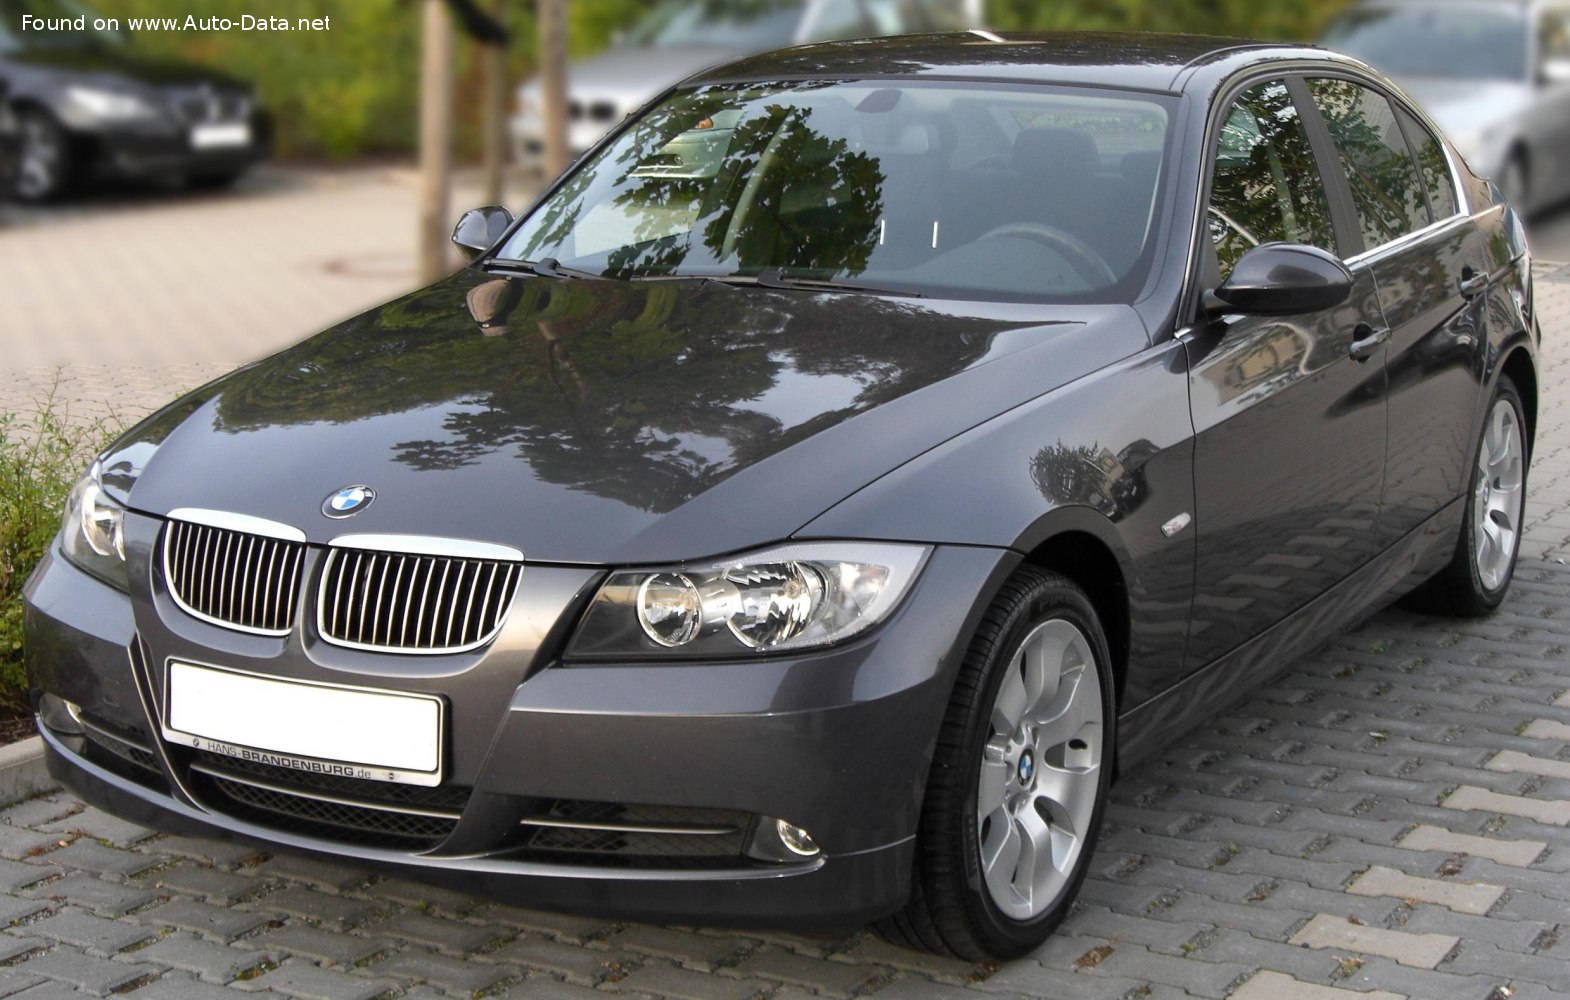 2005 BMW 3 Series Sedan (E90) 318i (129 Hp) | Technical specs, data, fuel consumption, Dimensions